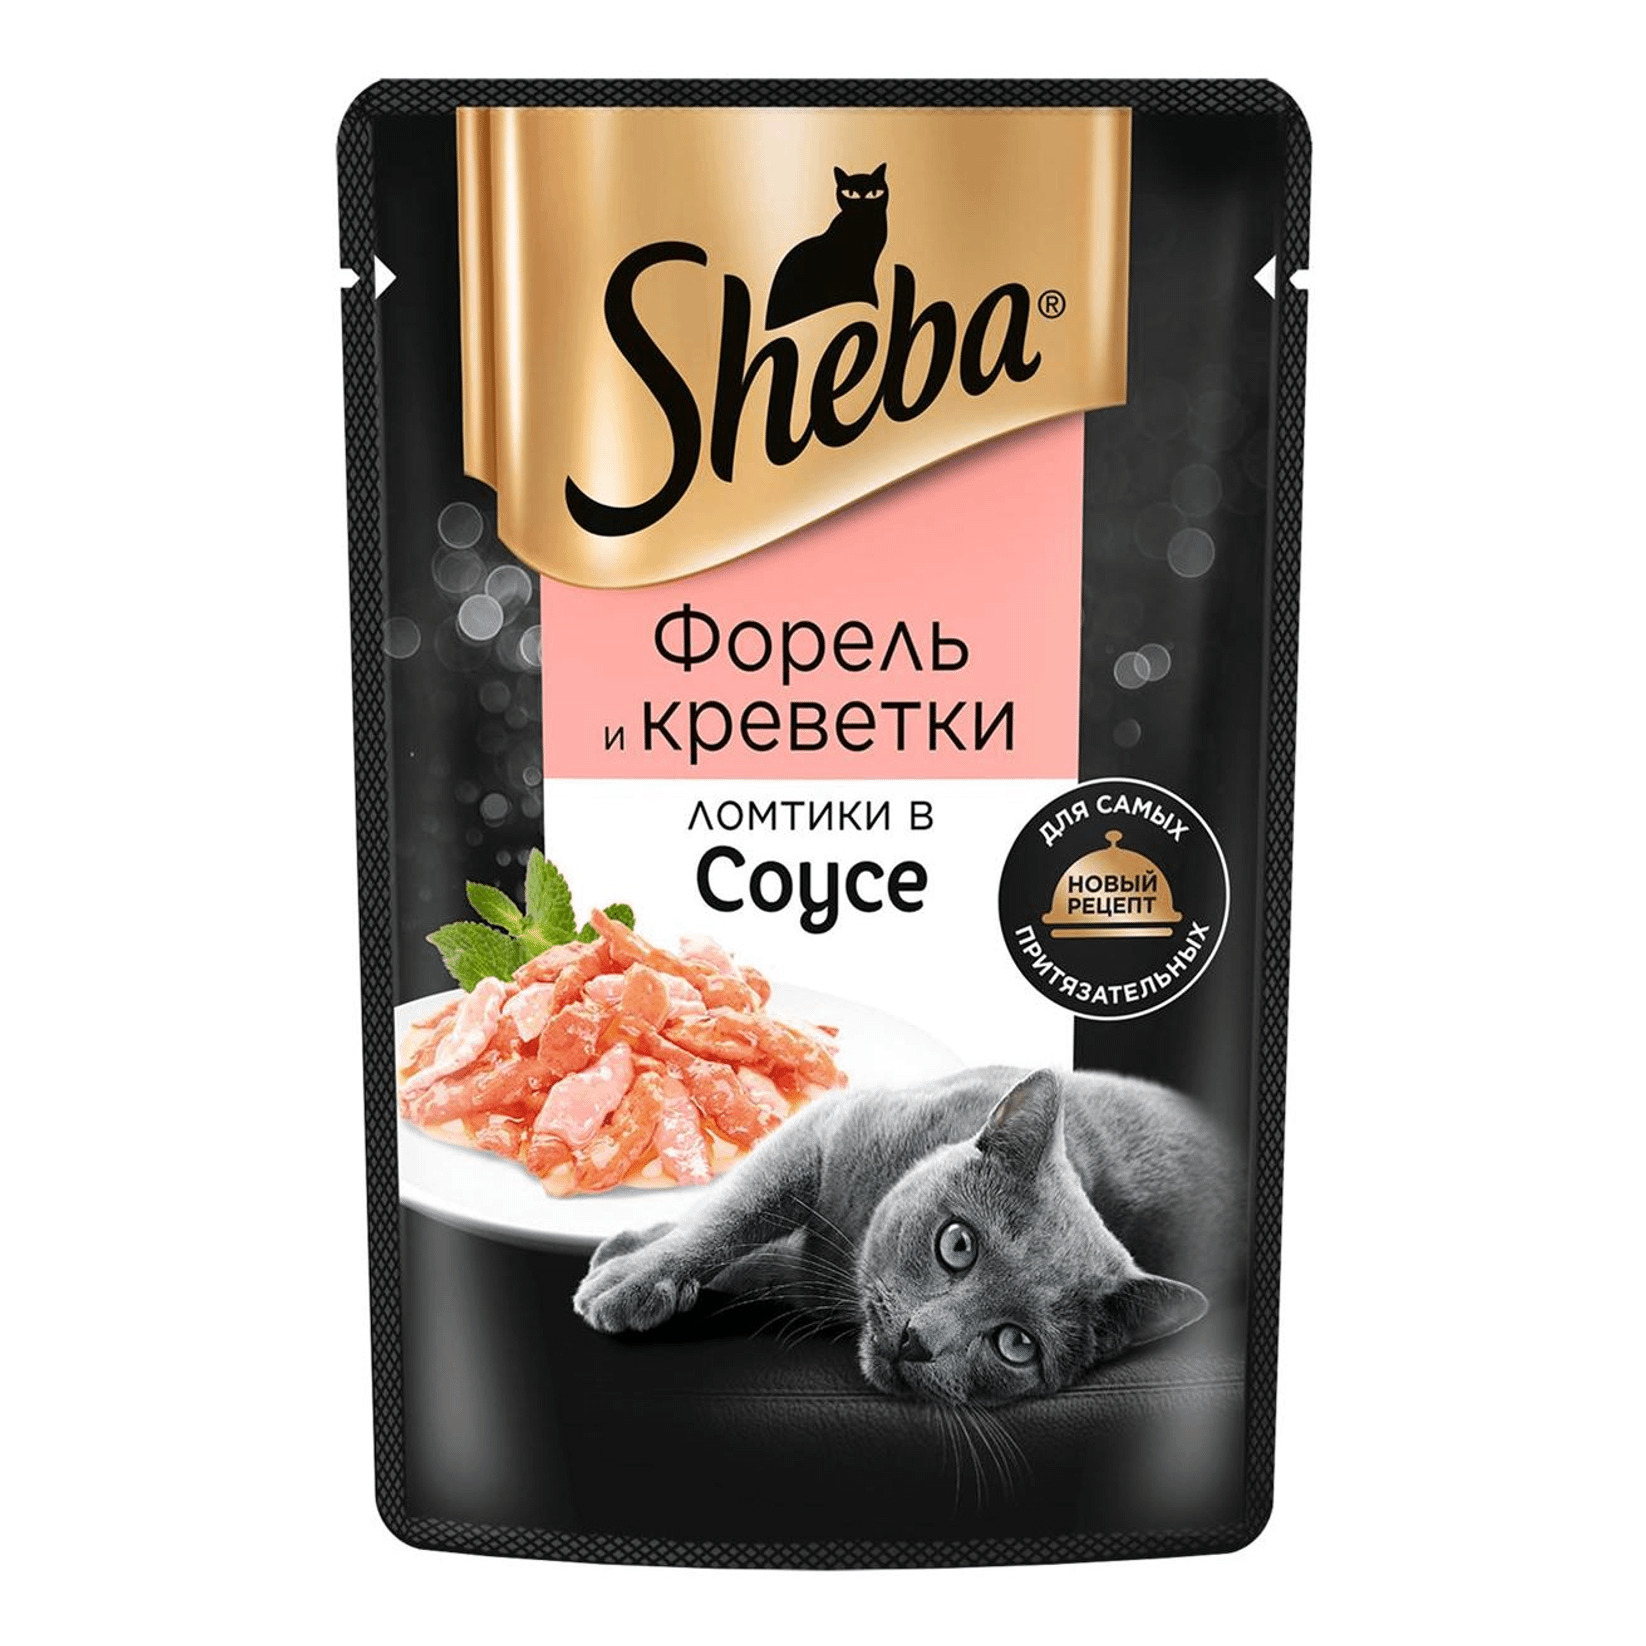 Влажный корм для кошек Sheba Pleasure, форель и креветки, ломтики в соусе, 85г